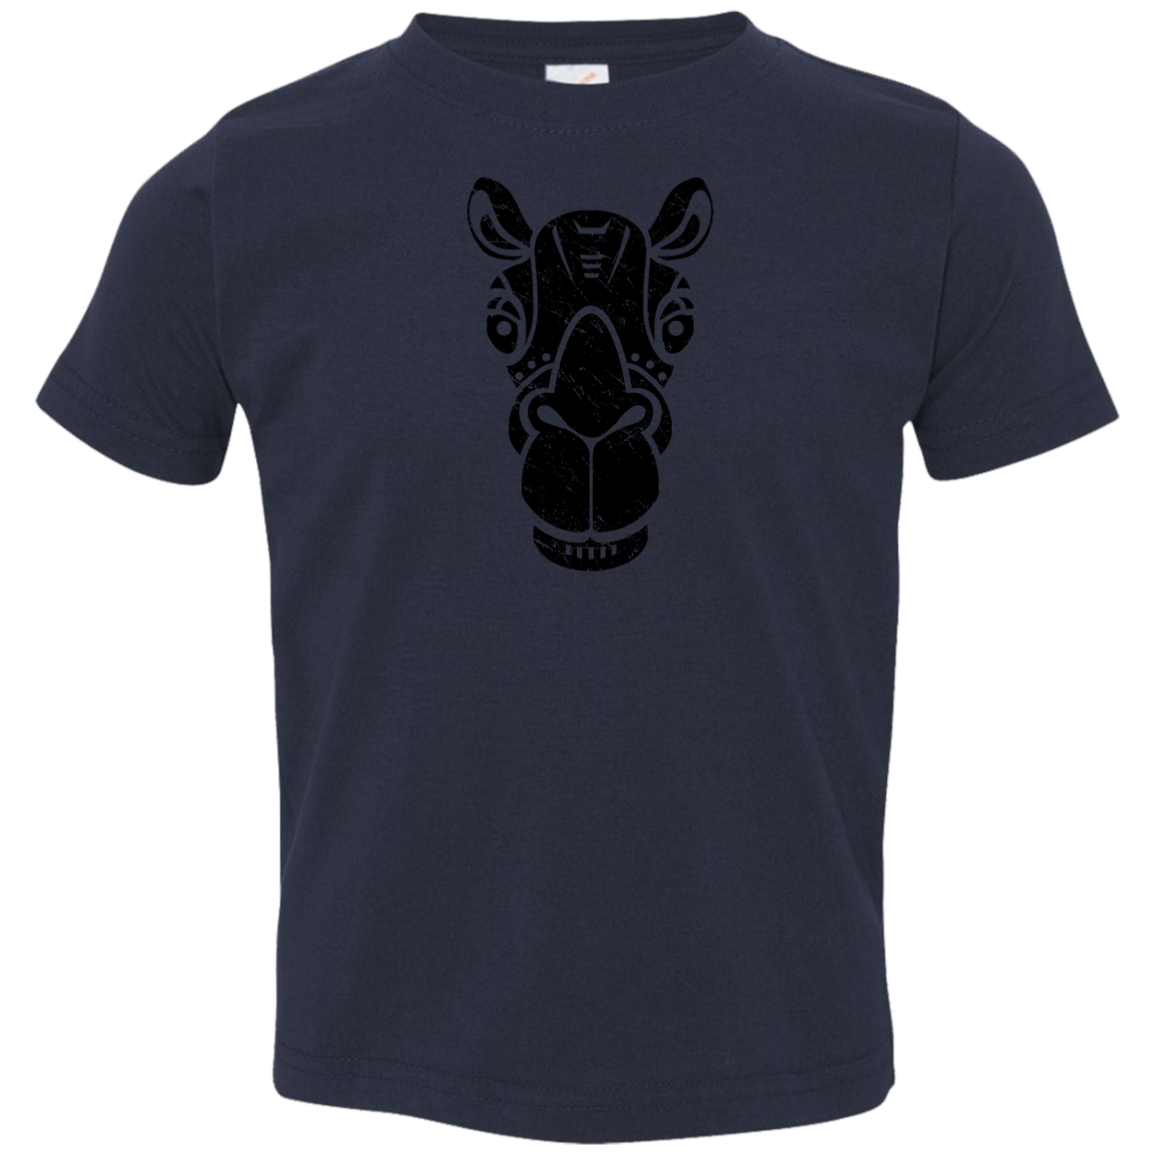 Black Distressed Emblem T-Shirt for Toddlers (Camel/Bob)